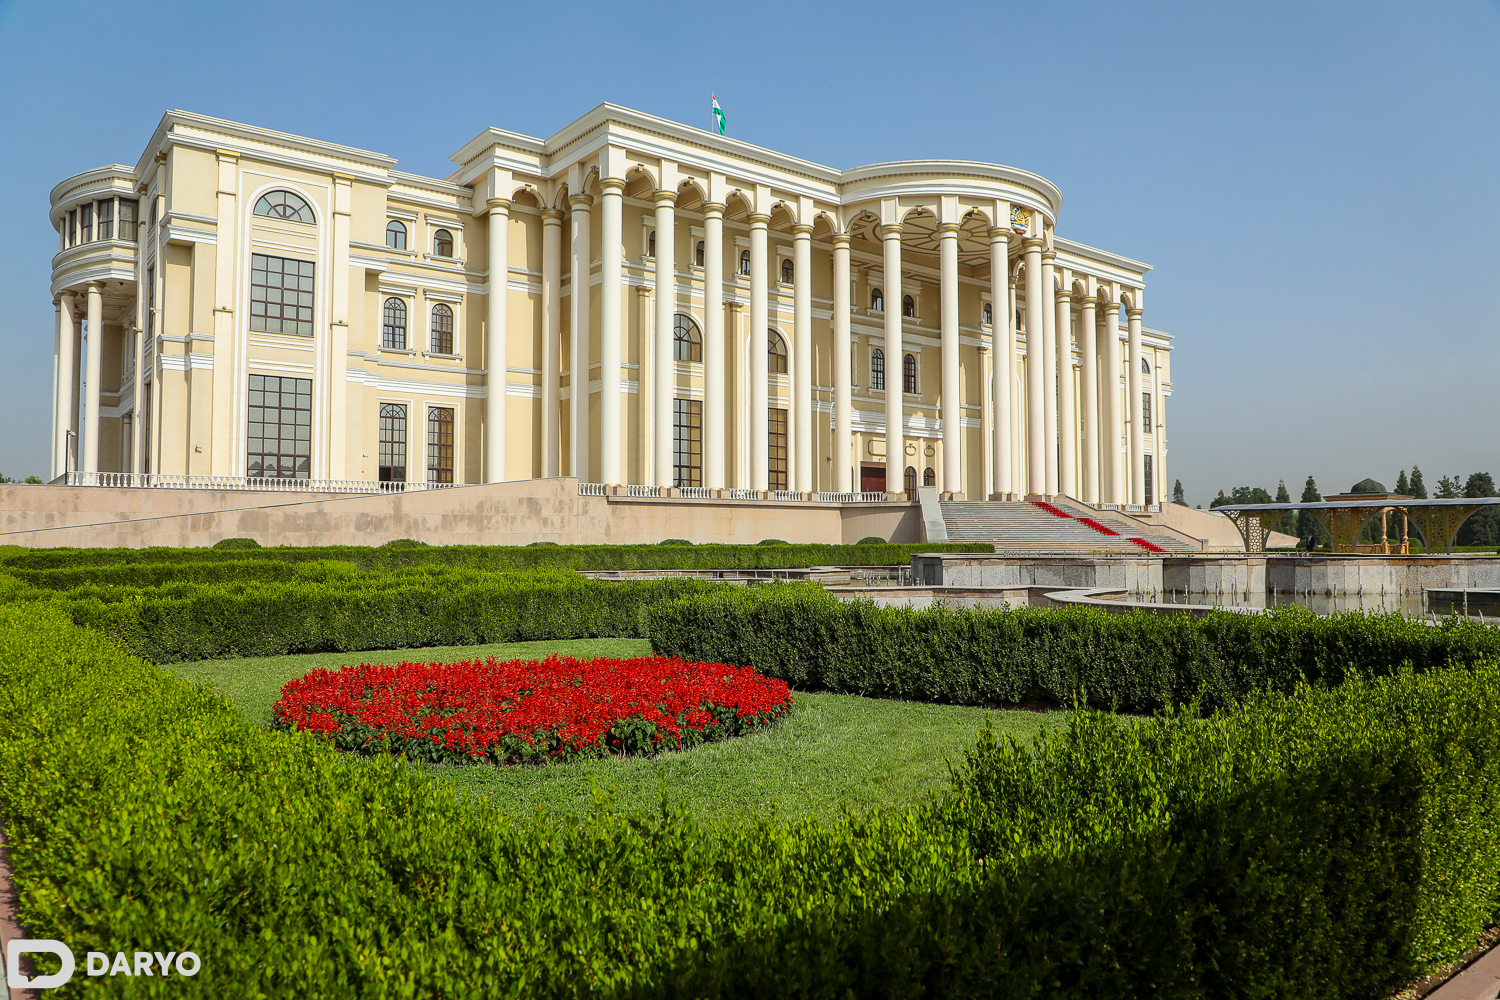 Дворец арбоб в Таджикистане